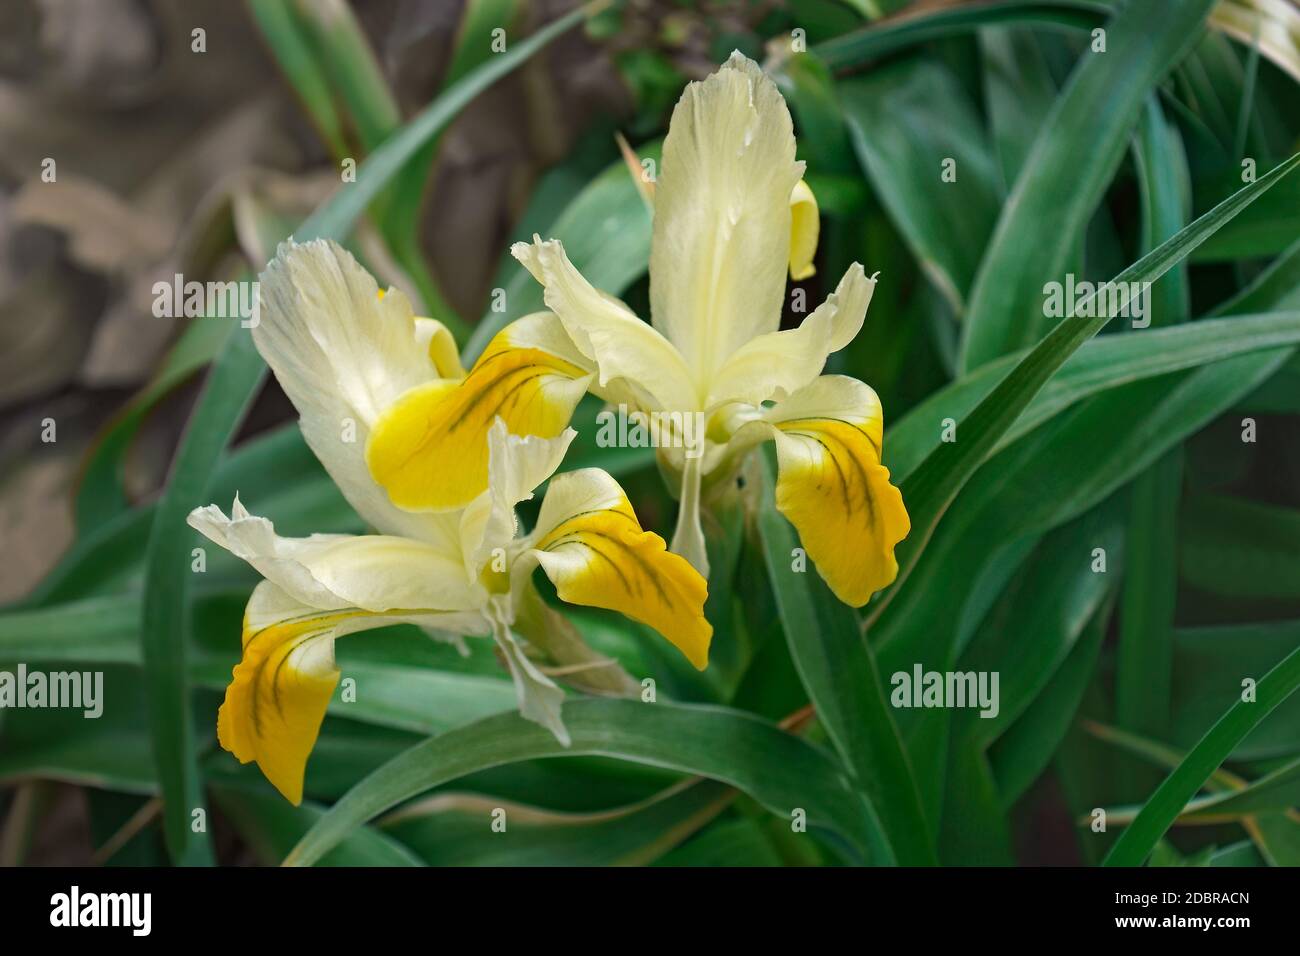 Corn-leaved juno iris (Iris bucharica) Stock Photo